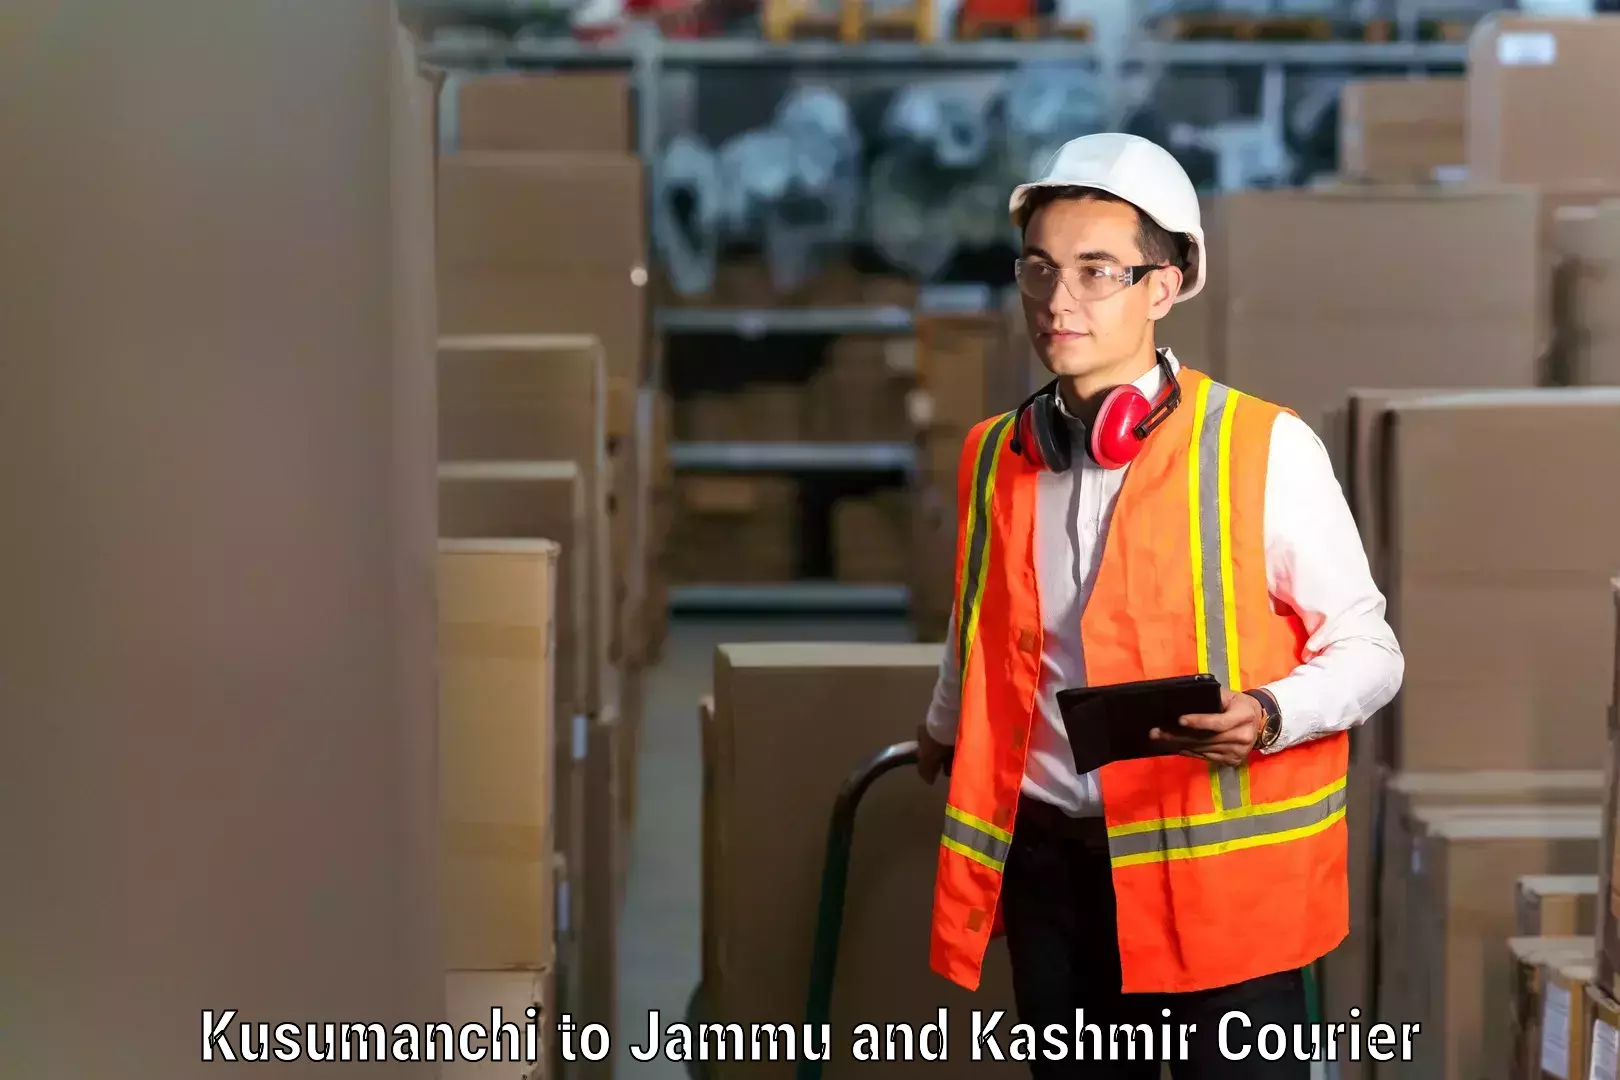 Efficient moving company Kusumanchi to University of Jammu